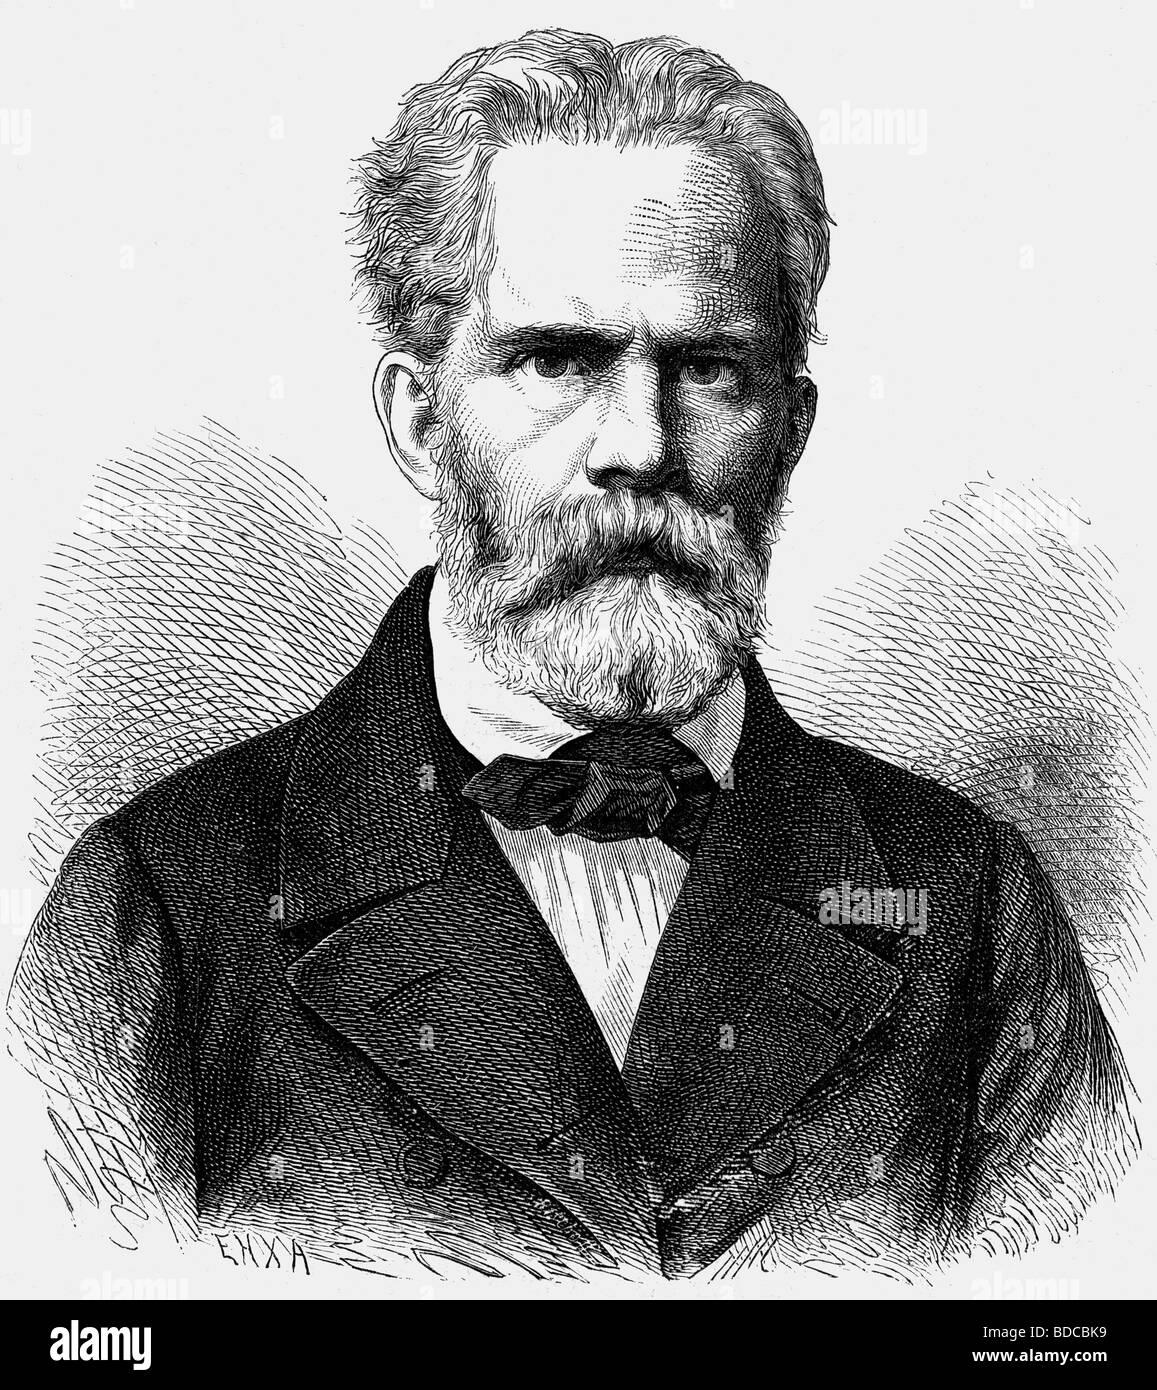 Kossak, Ernst, 4.8.1814 - 3.1.1880, autore/scrittore tedesco, ritratto, giornalista, incisione su legno, 19th secolo, Foto Stock